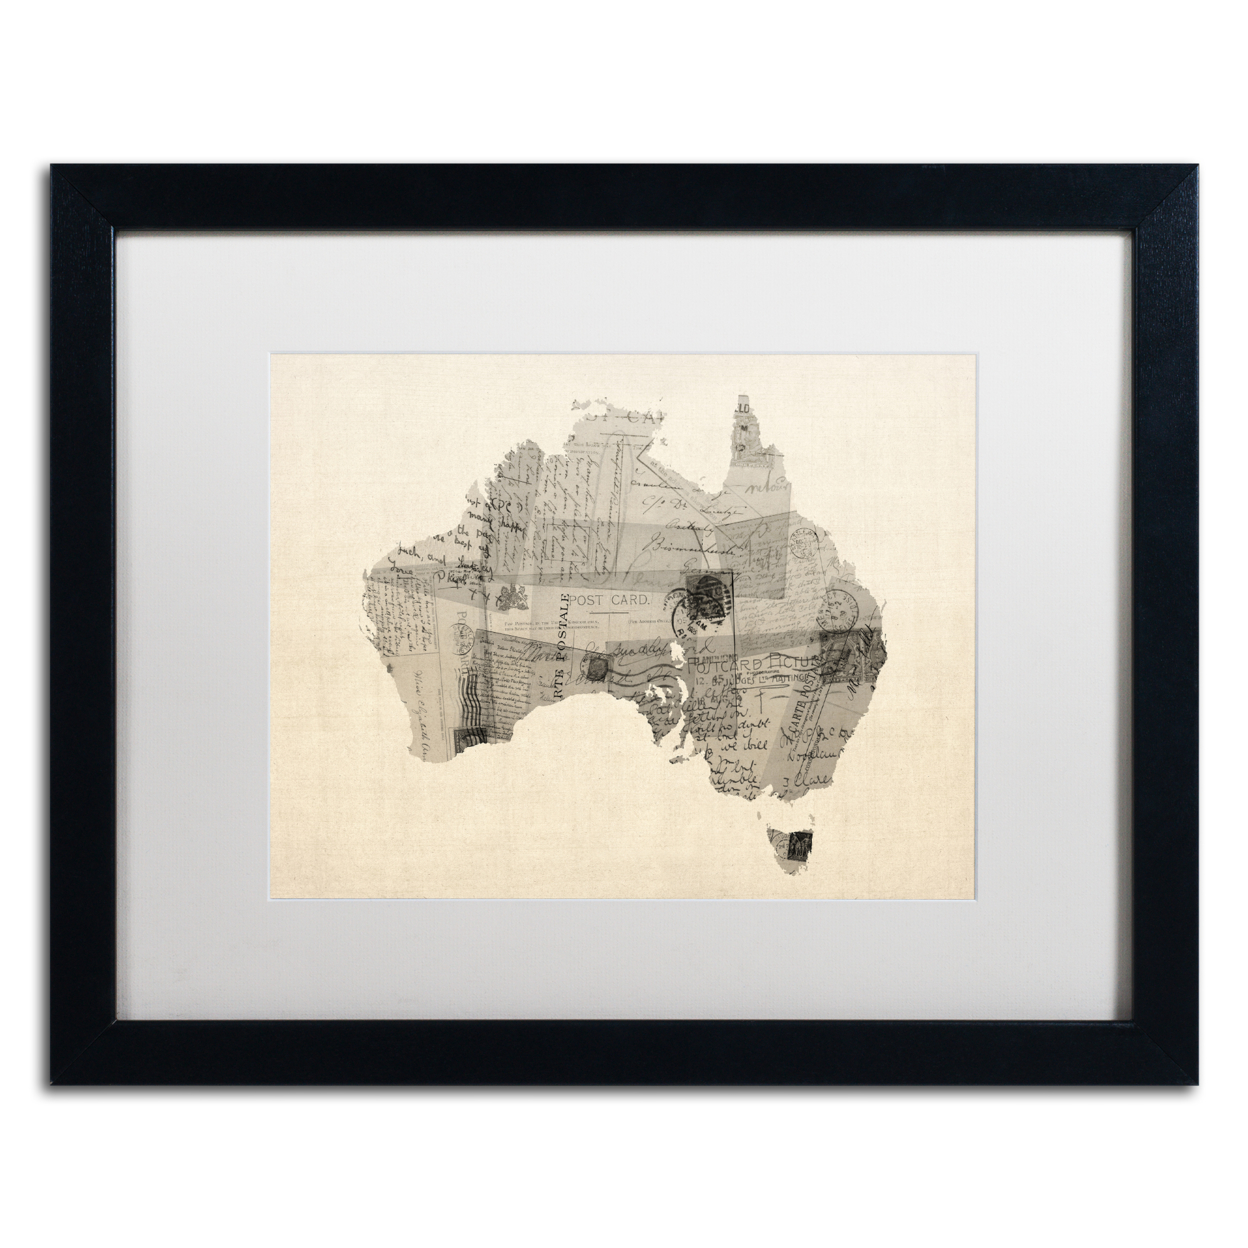 Michael Tompsett 'Old Postcard Map Of Australia' Black Wooden Framed Art 18 X 22 Inches